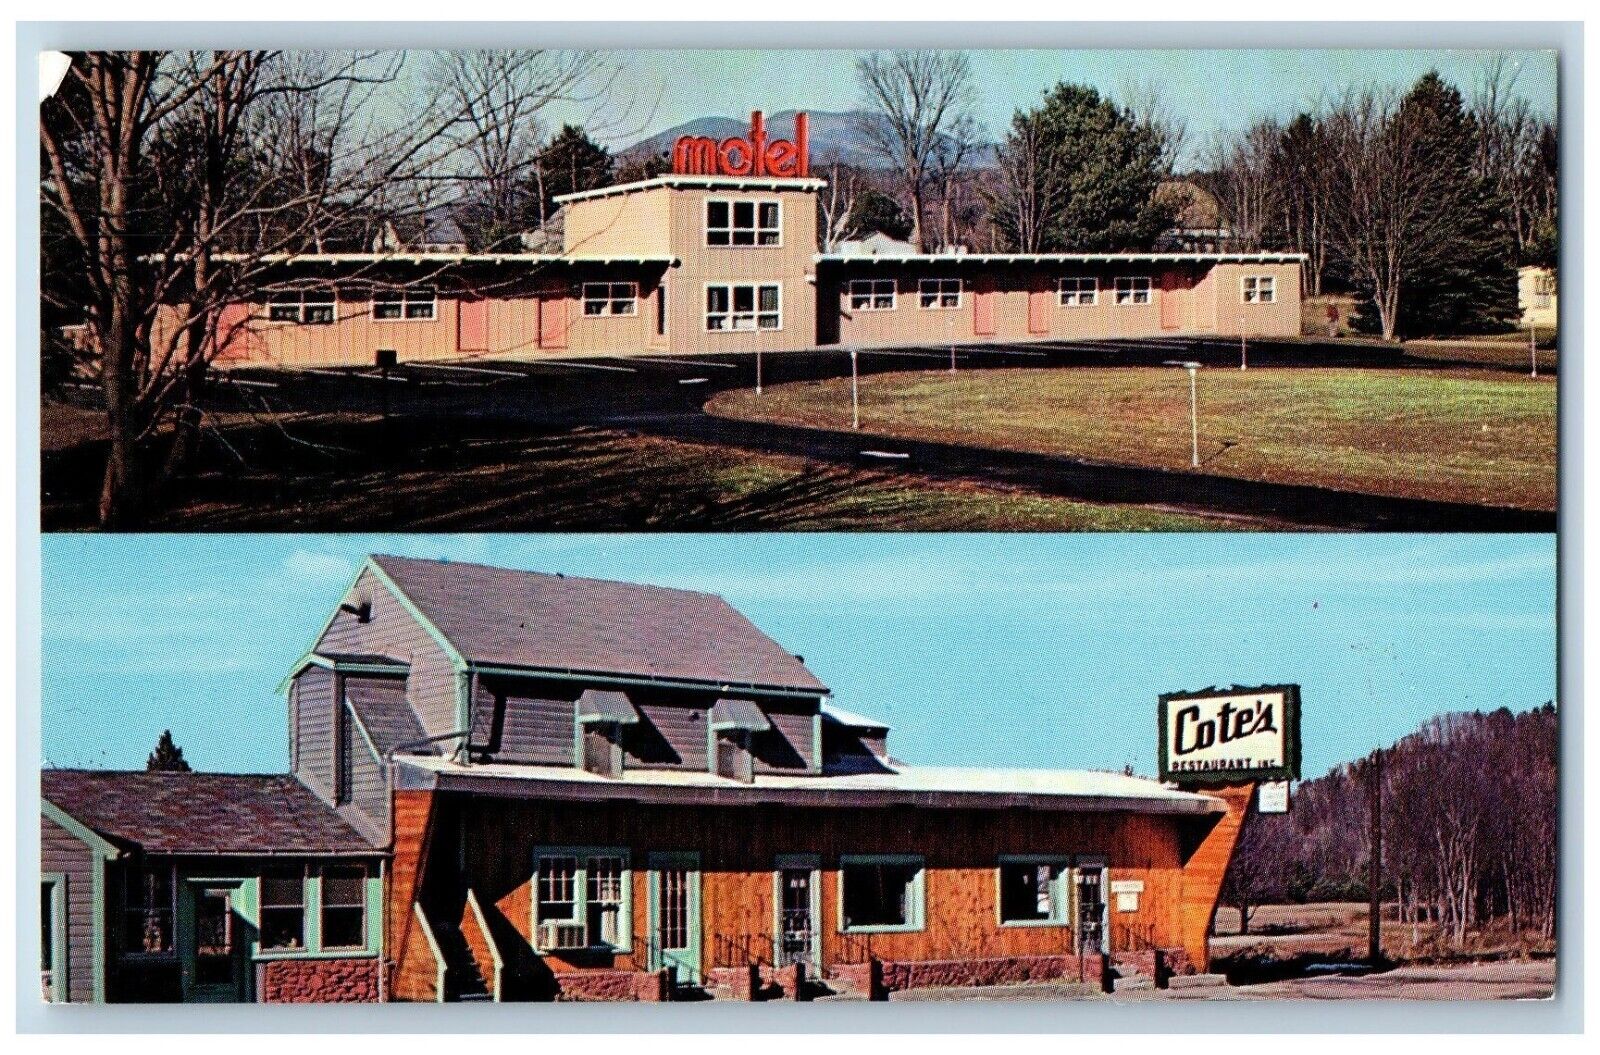 Claremont New Hampshire Postcard Cote\'s Restaurant Motel c1960 Vintage Antique